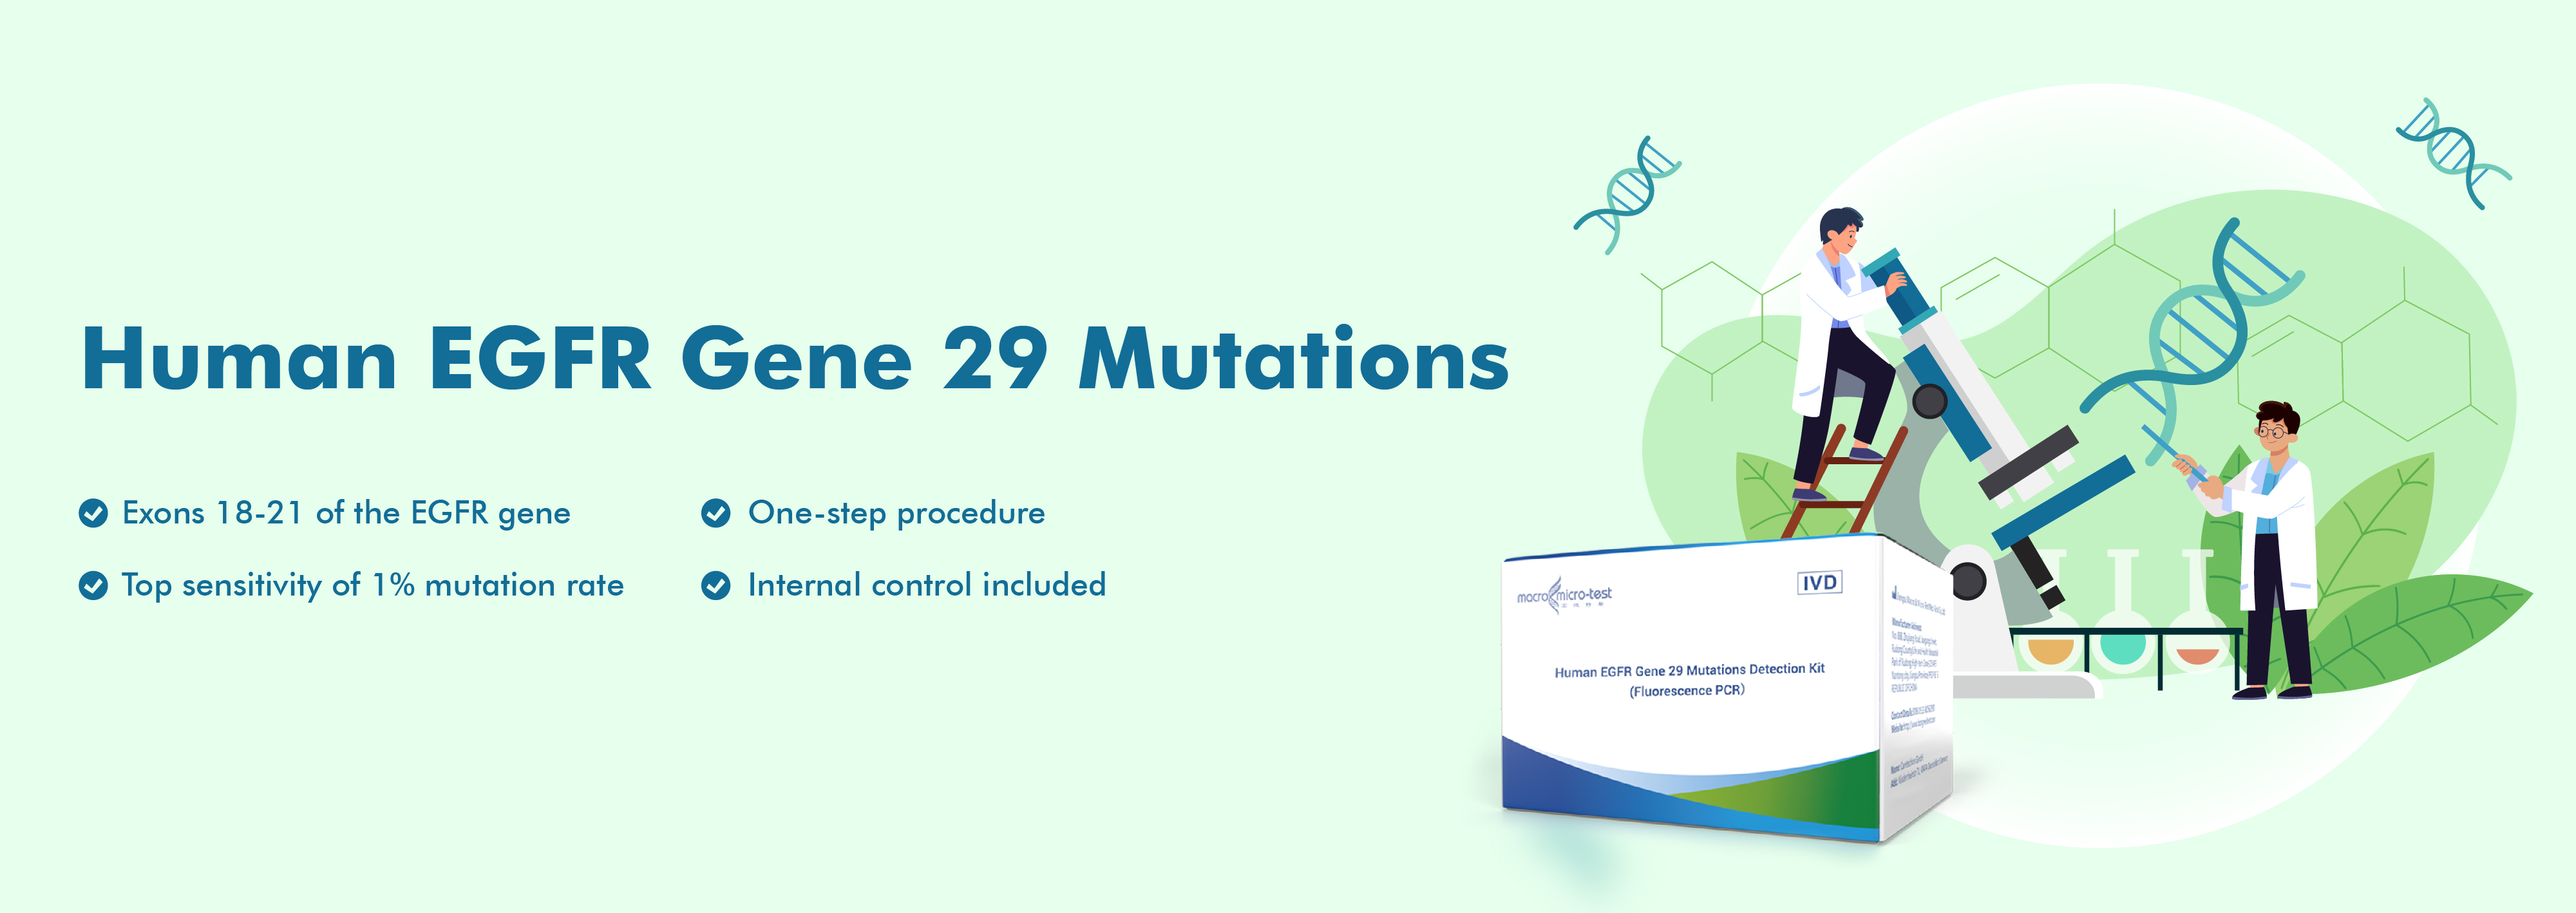 Mutacións do xene 29 do EGFR humano